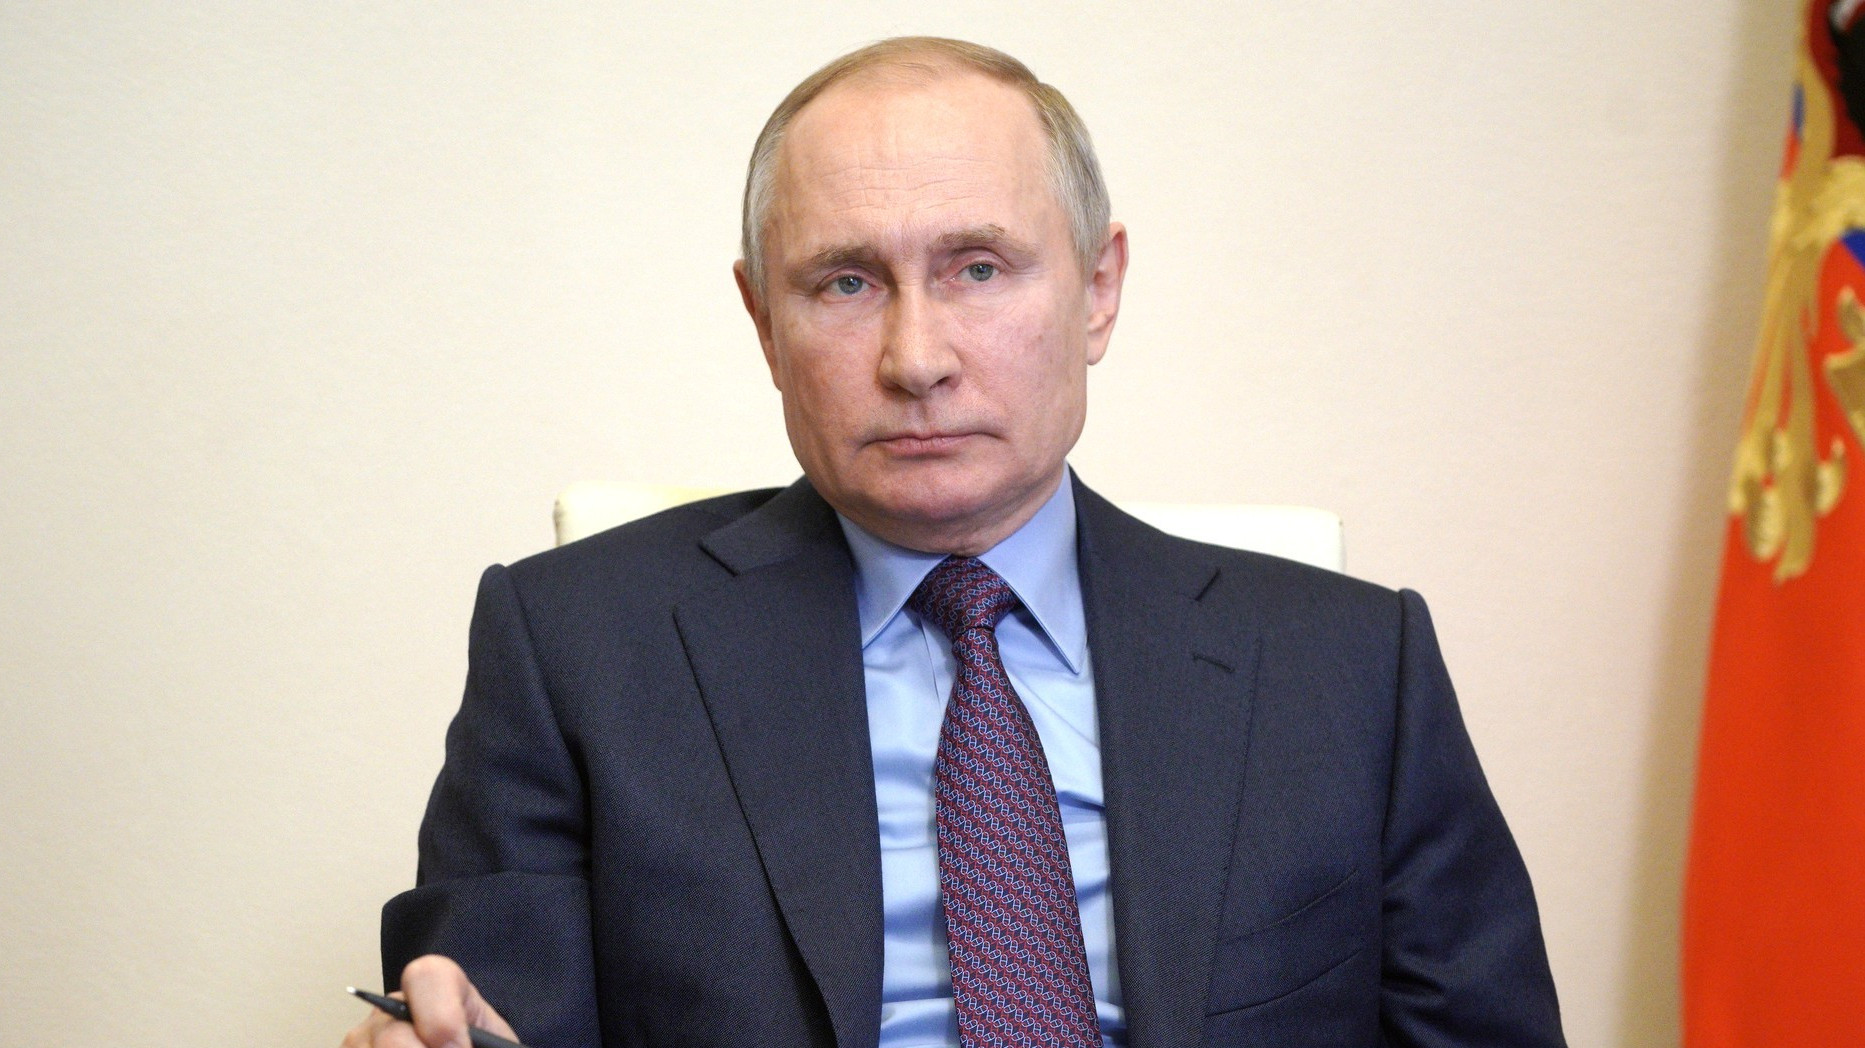 EEUU estudia sanciones y expulsar al personal diplomático ruso por la presunta intromisión de Moscú